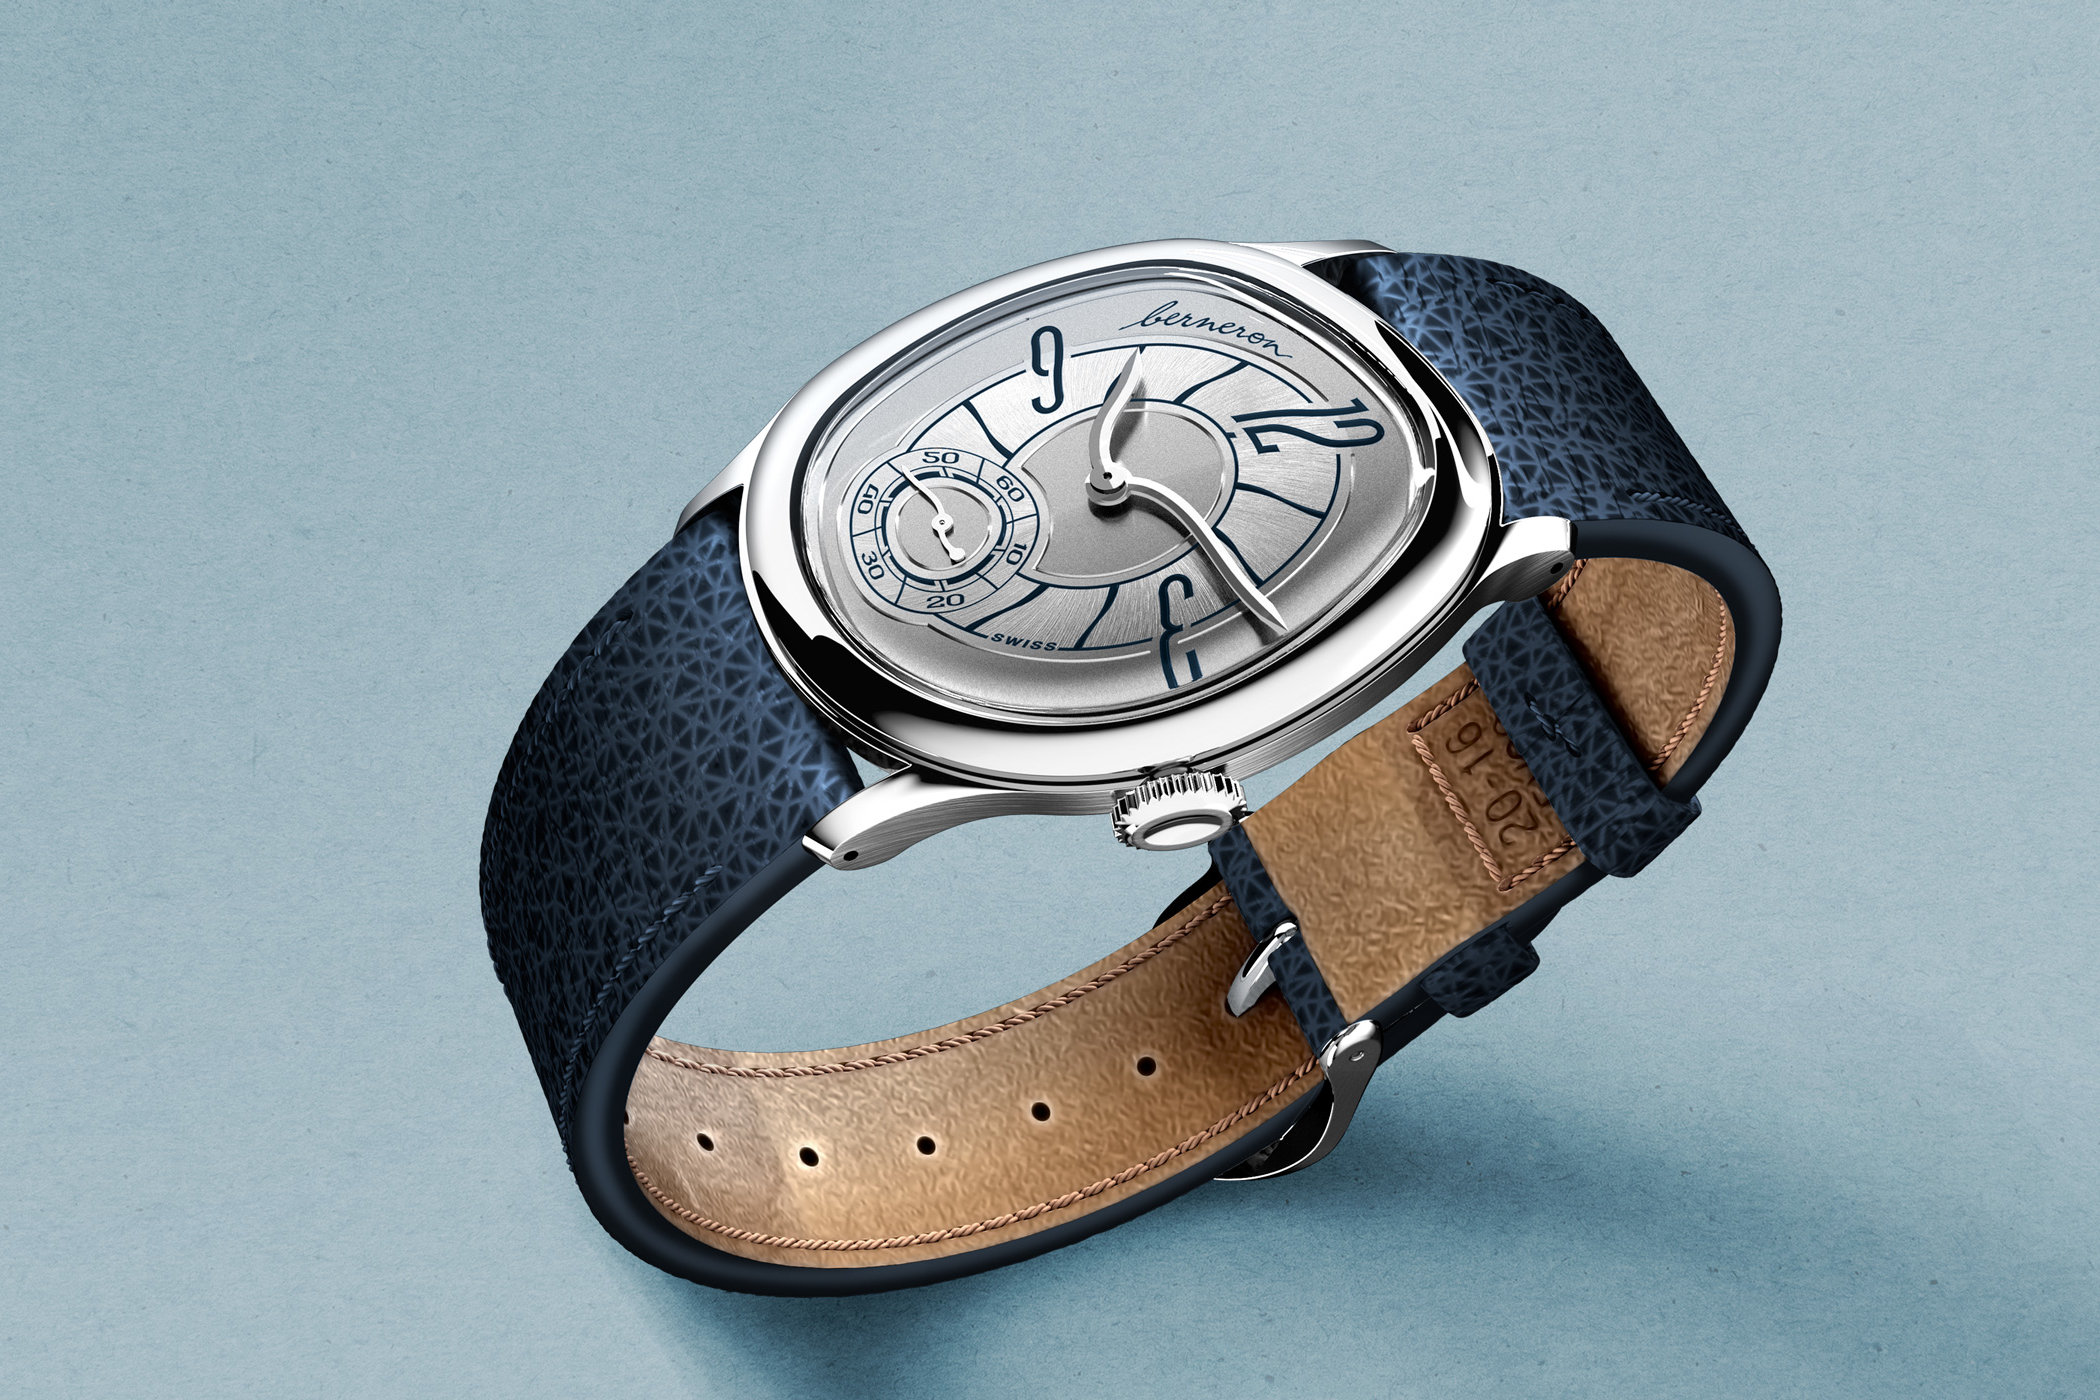 Раскрываем тайны стильных часов Berneron Mirage Prussian Blue & Sienna